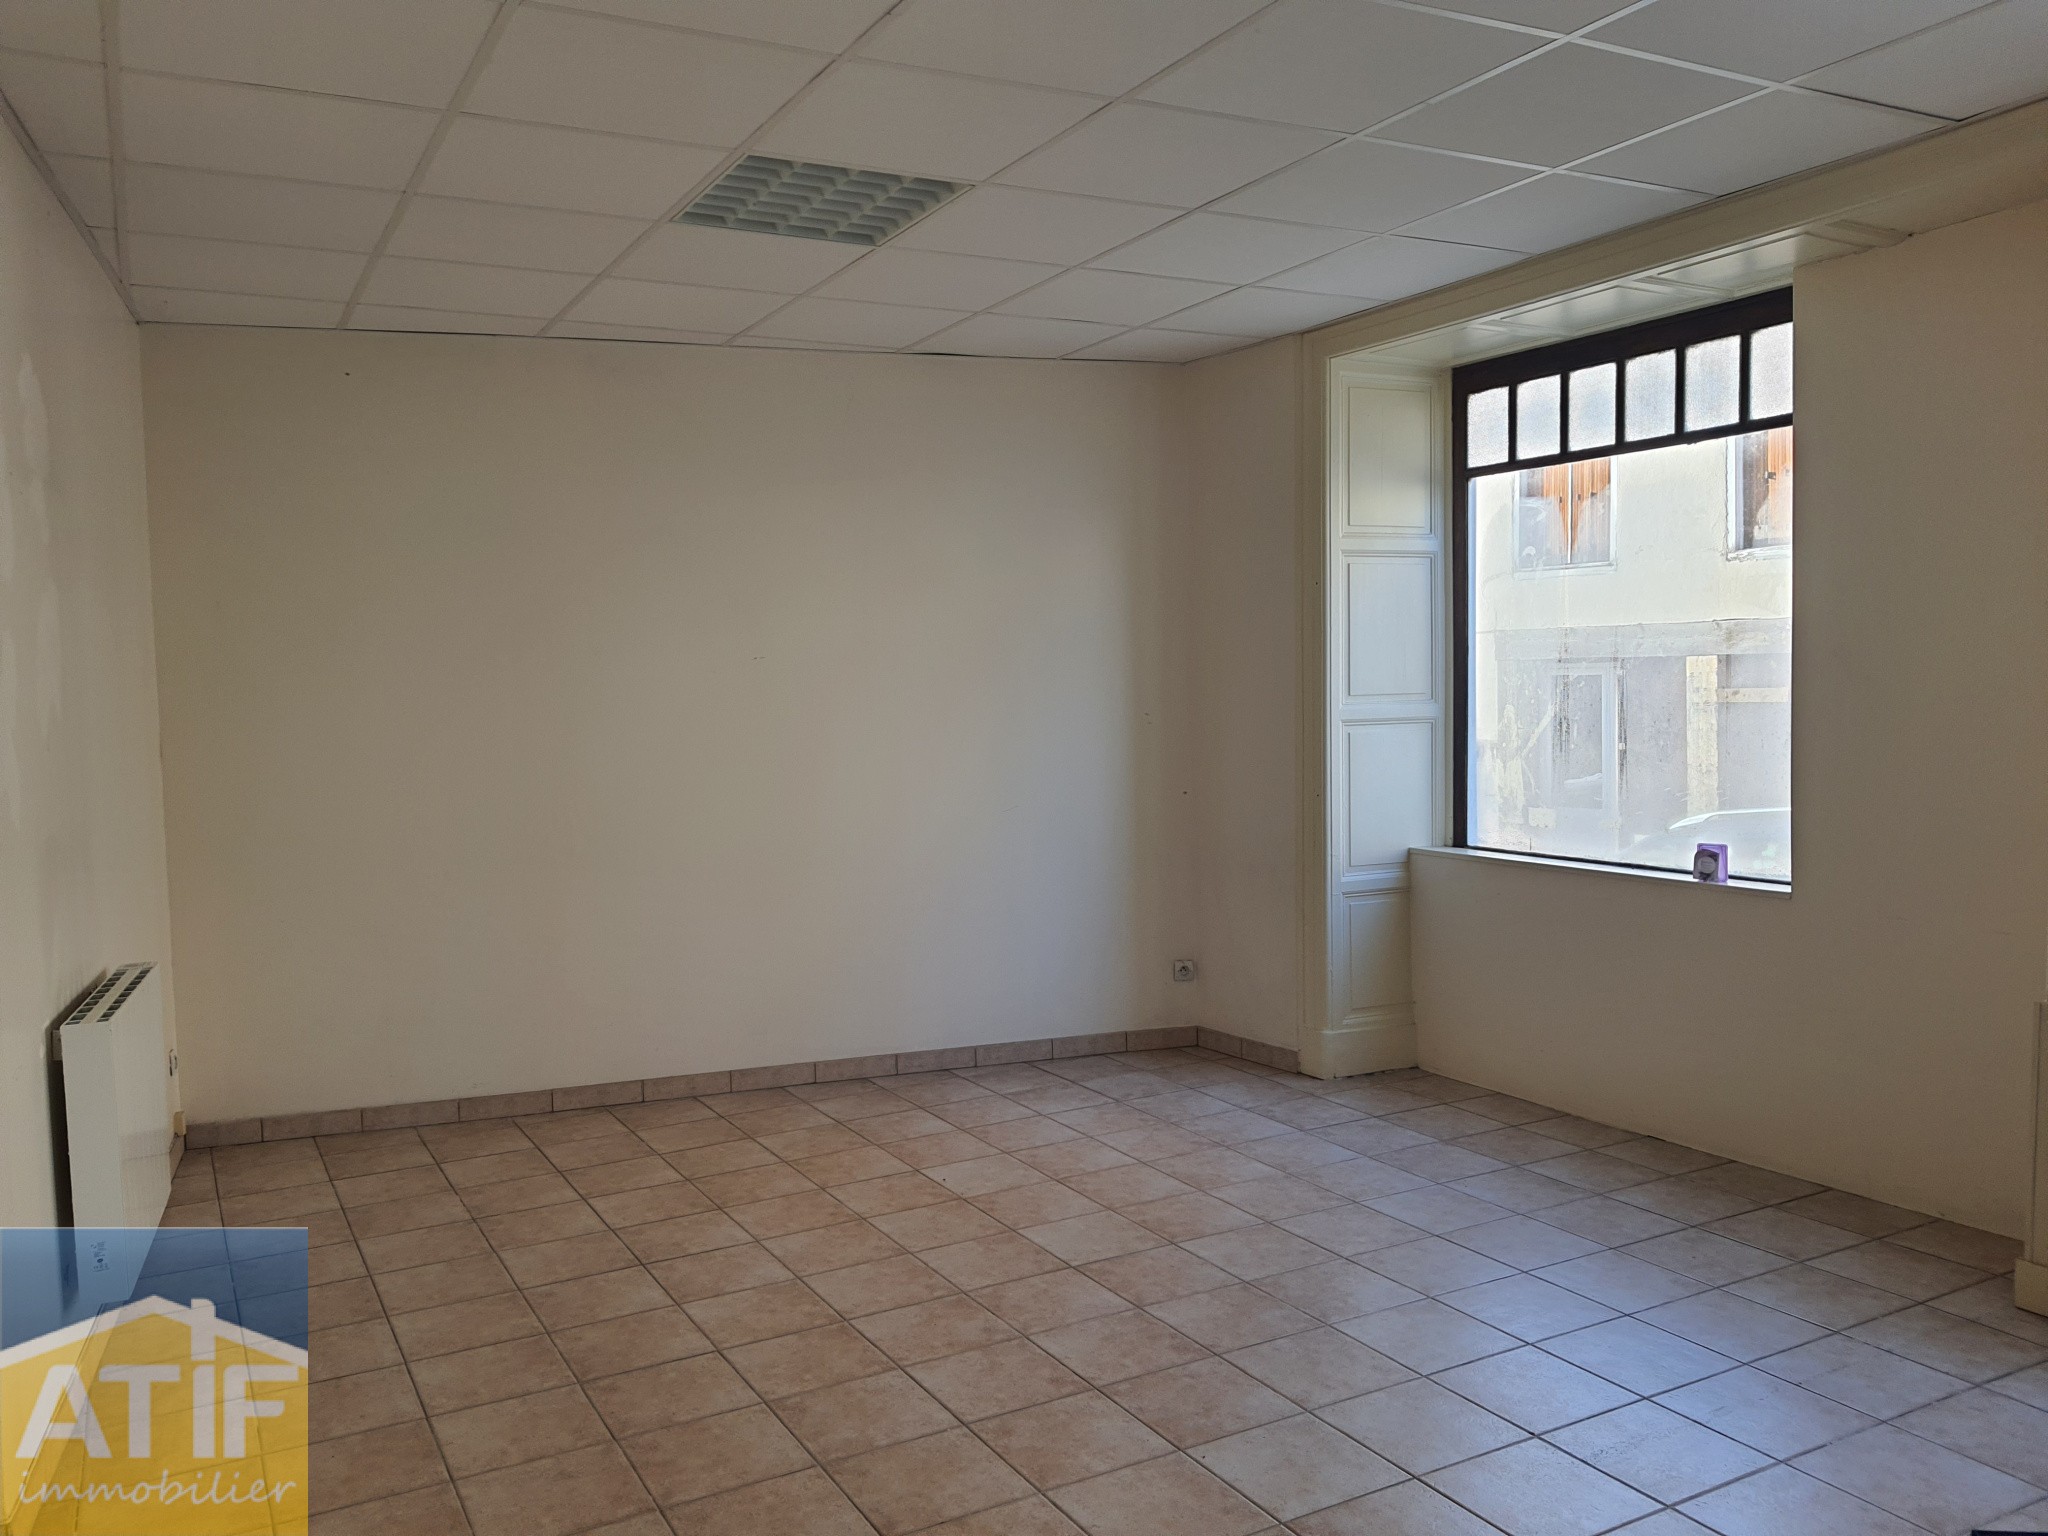 Location Bureau / Commerce à Saint-Just-en-Chevalet 0 pièce